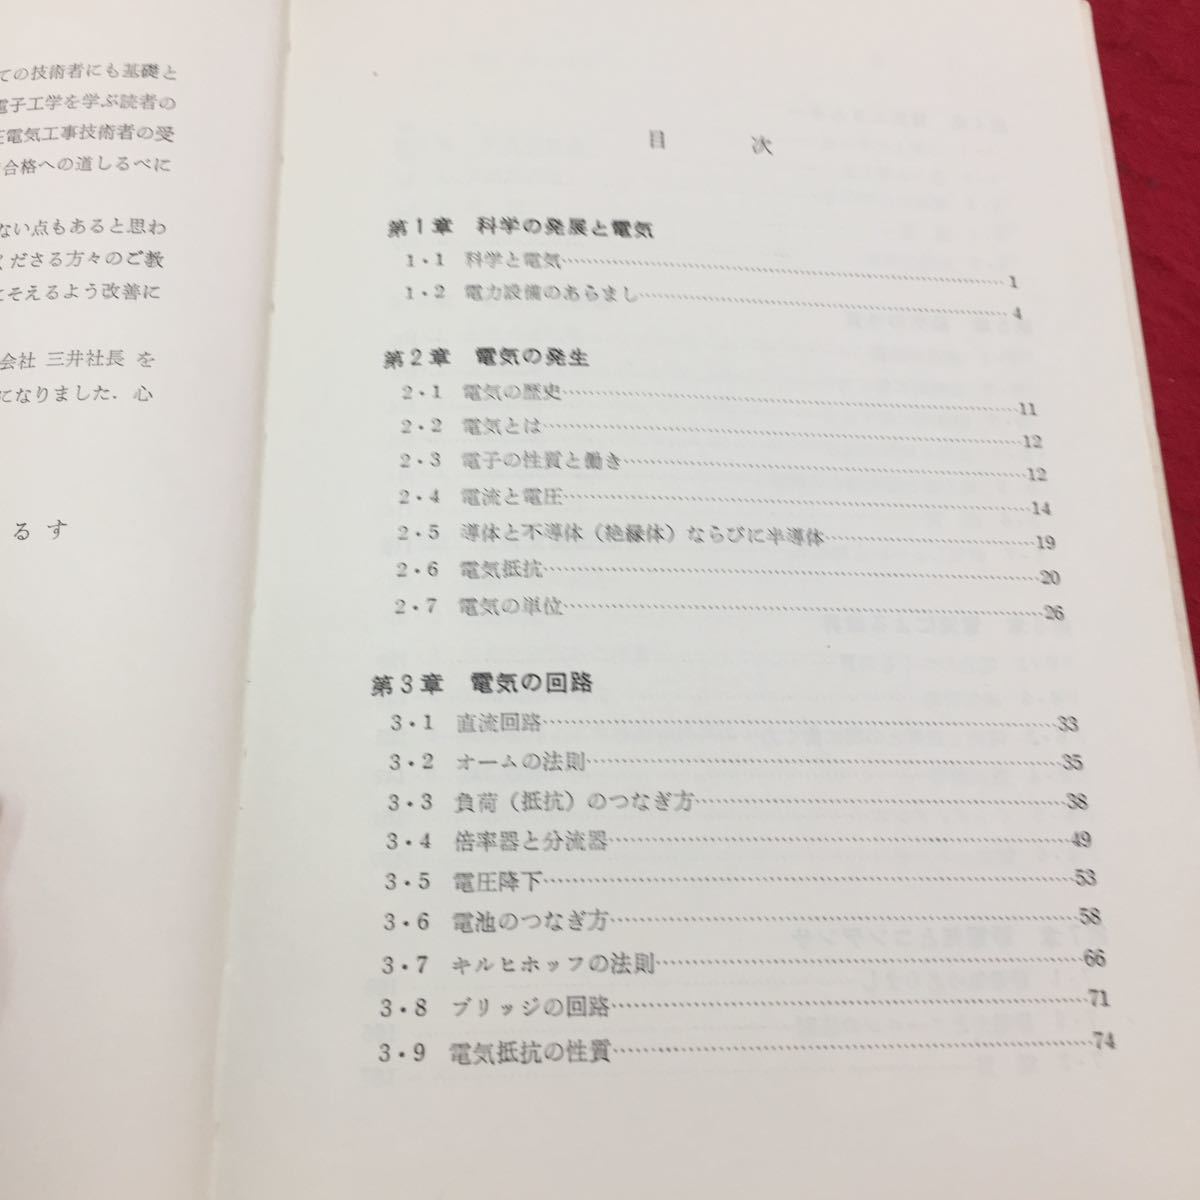 Y15-335 日本図書館協定選定図書 これでわかった電気の理論 第1章 科学の発展と電気 啓学出版株式会社 原正人 1973年 の画像2